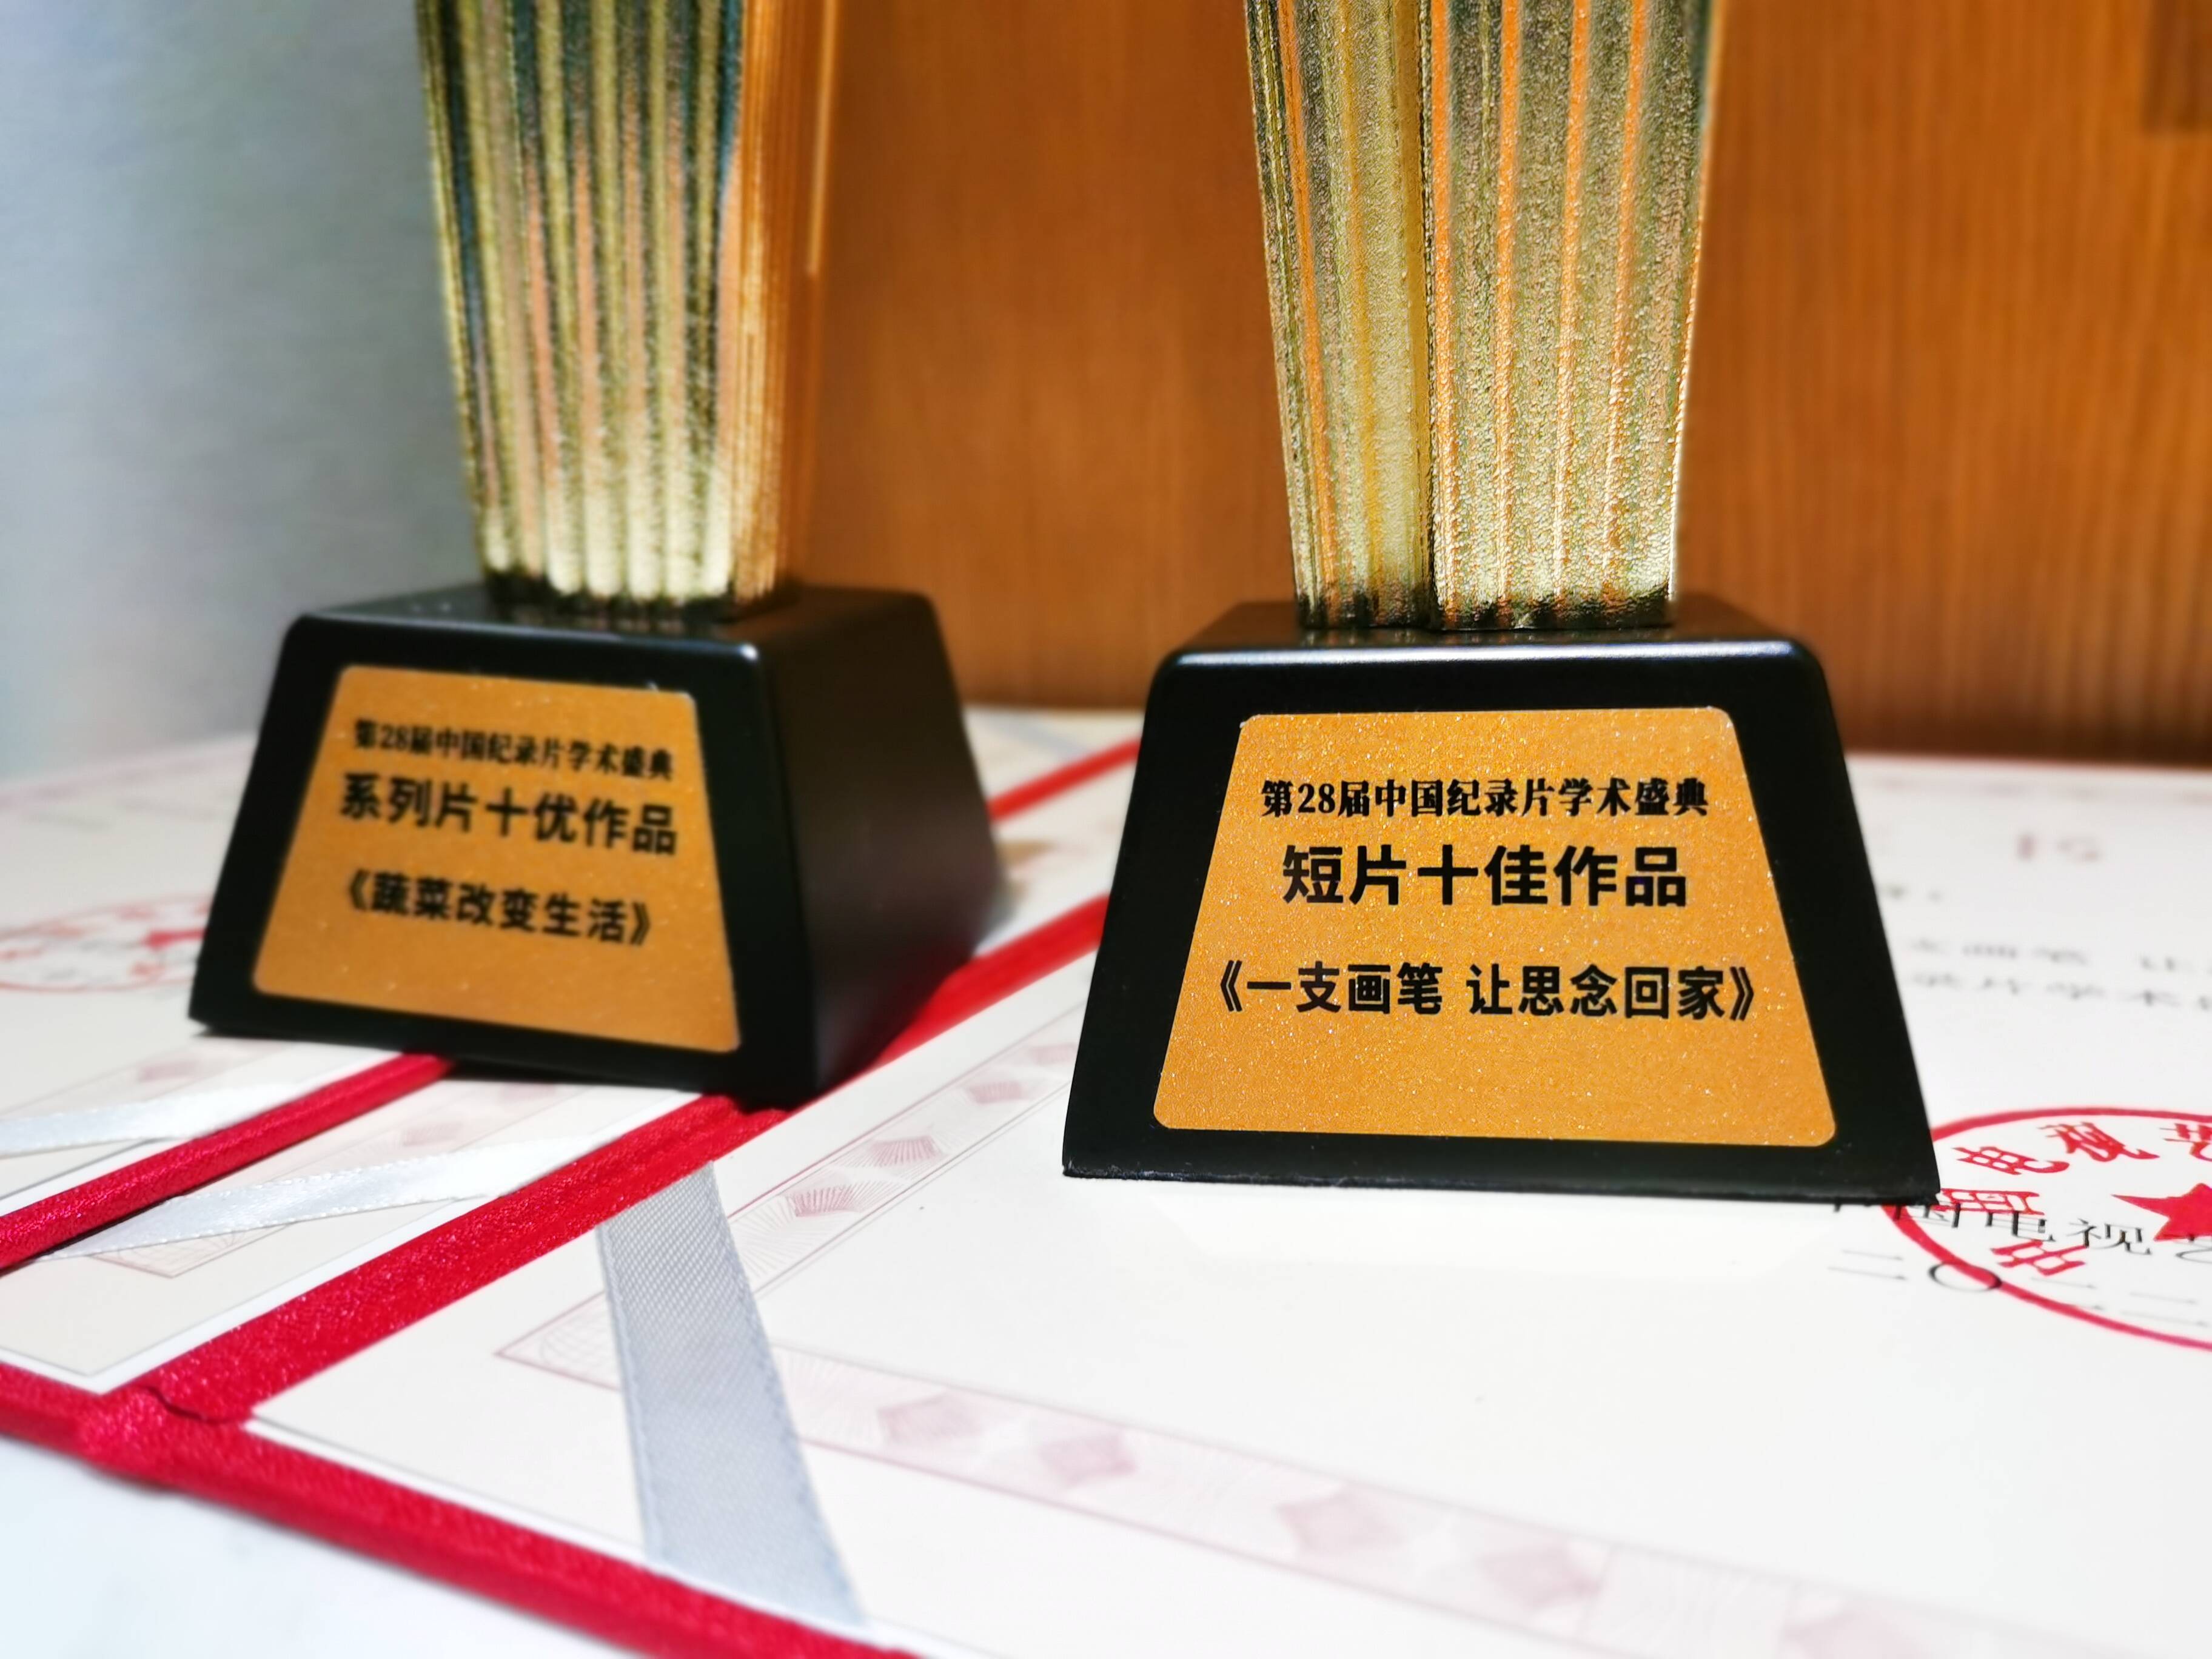 山东广播电视台三部纪录片斩获第28届中国纪录片学术盛典 “十佳”、“十优”作品